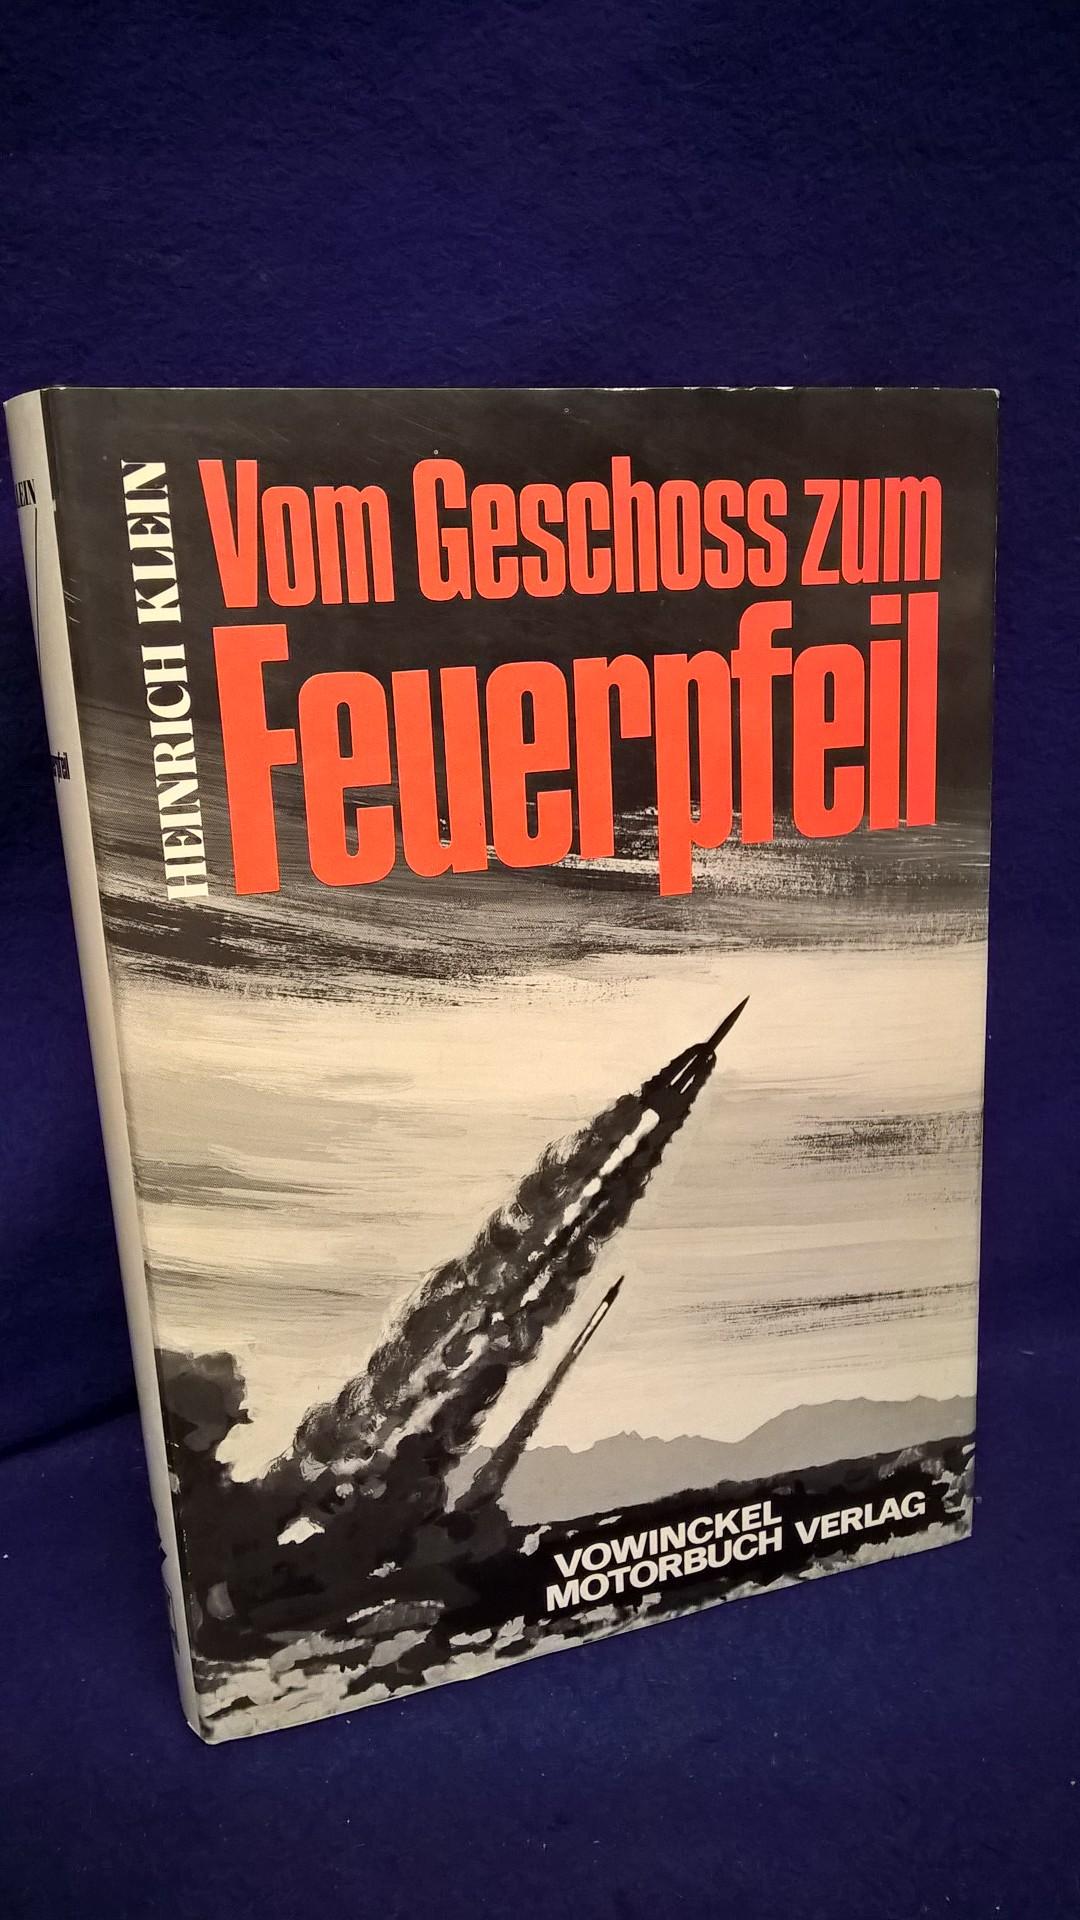 Vom Geschoß zum Feuerpfeil. Der große Umbruch der Waffentechnik in Deutschland 1900-1970. Eine Dokumentation